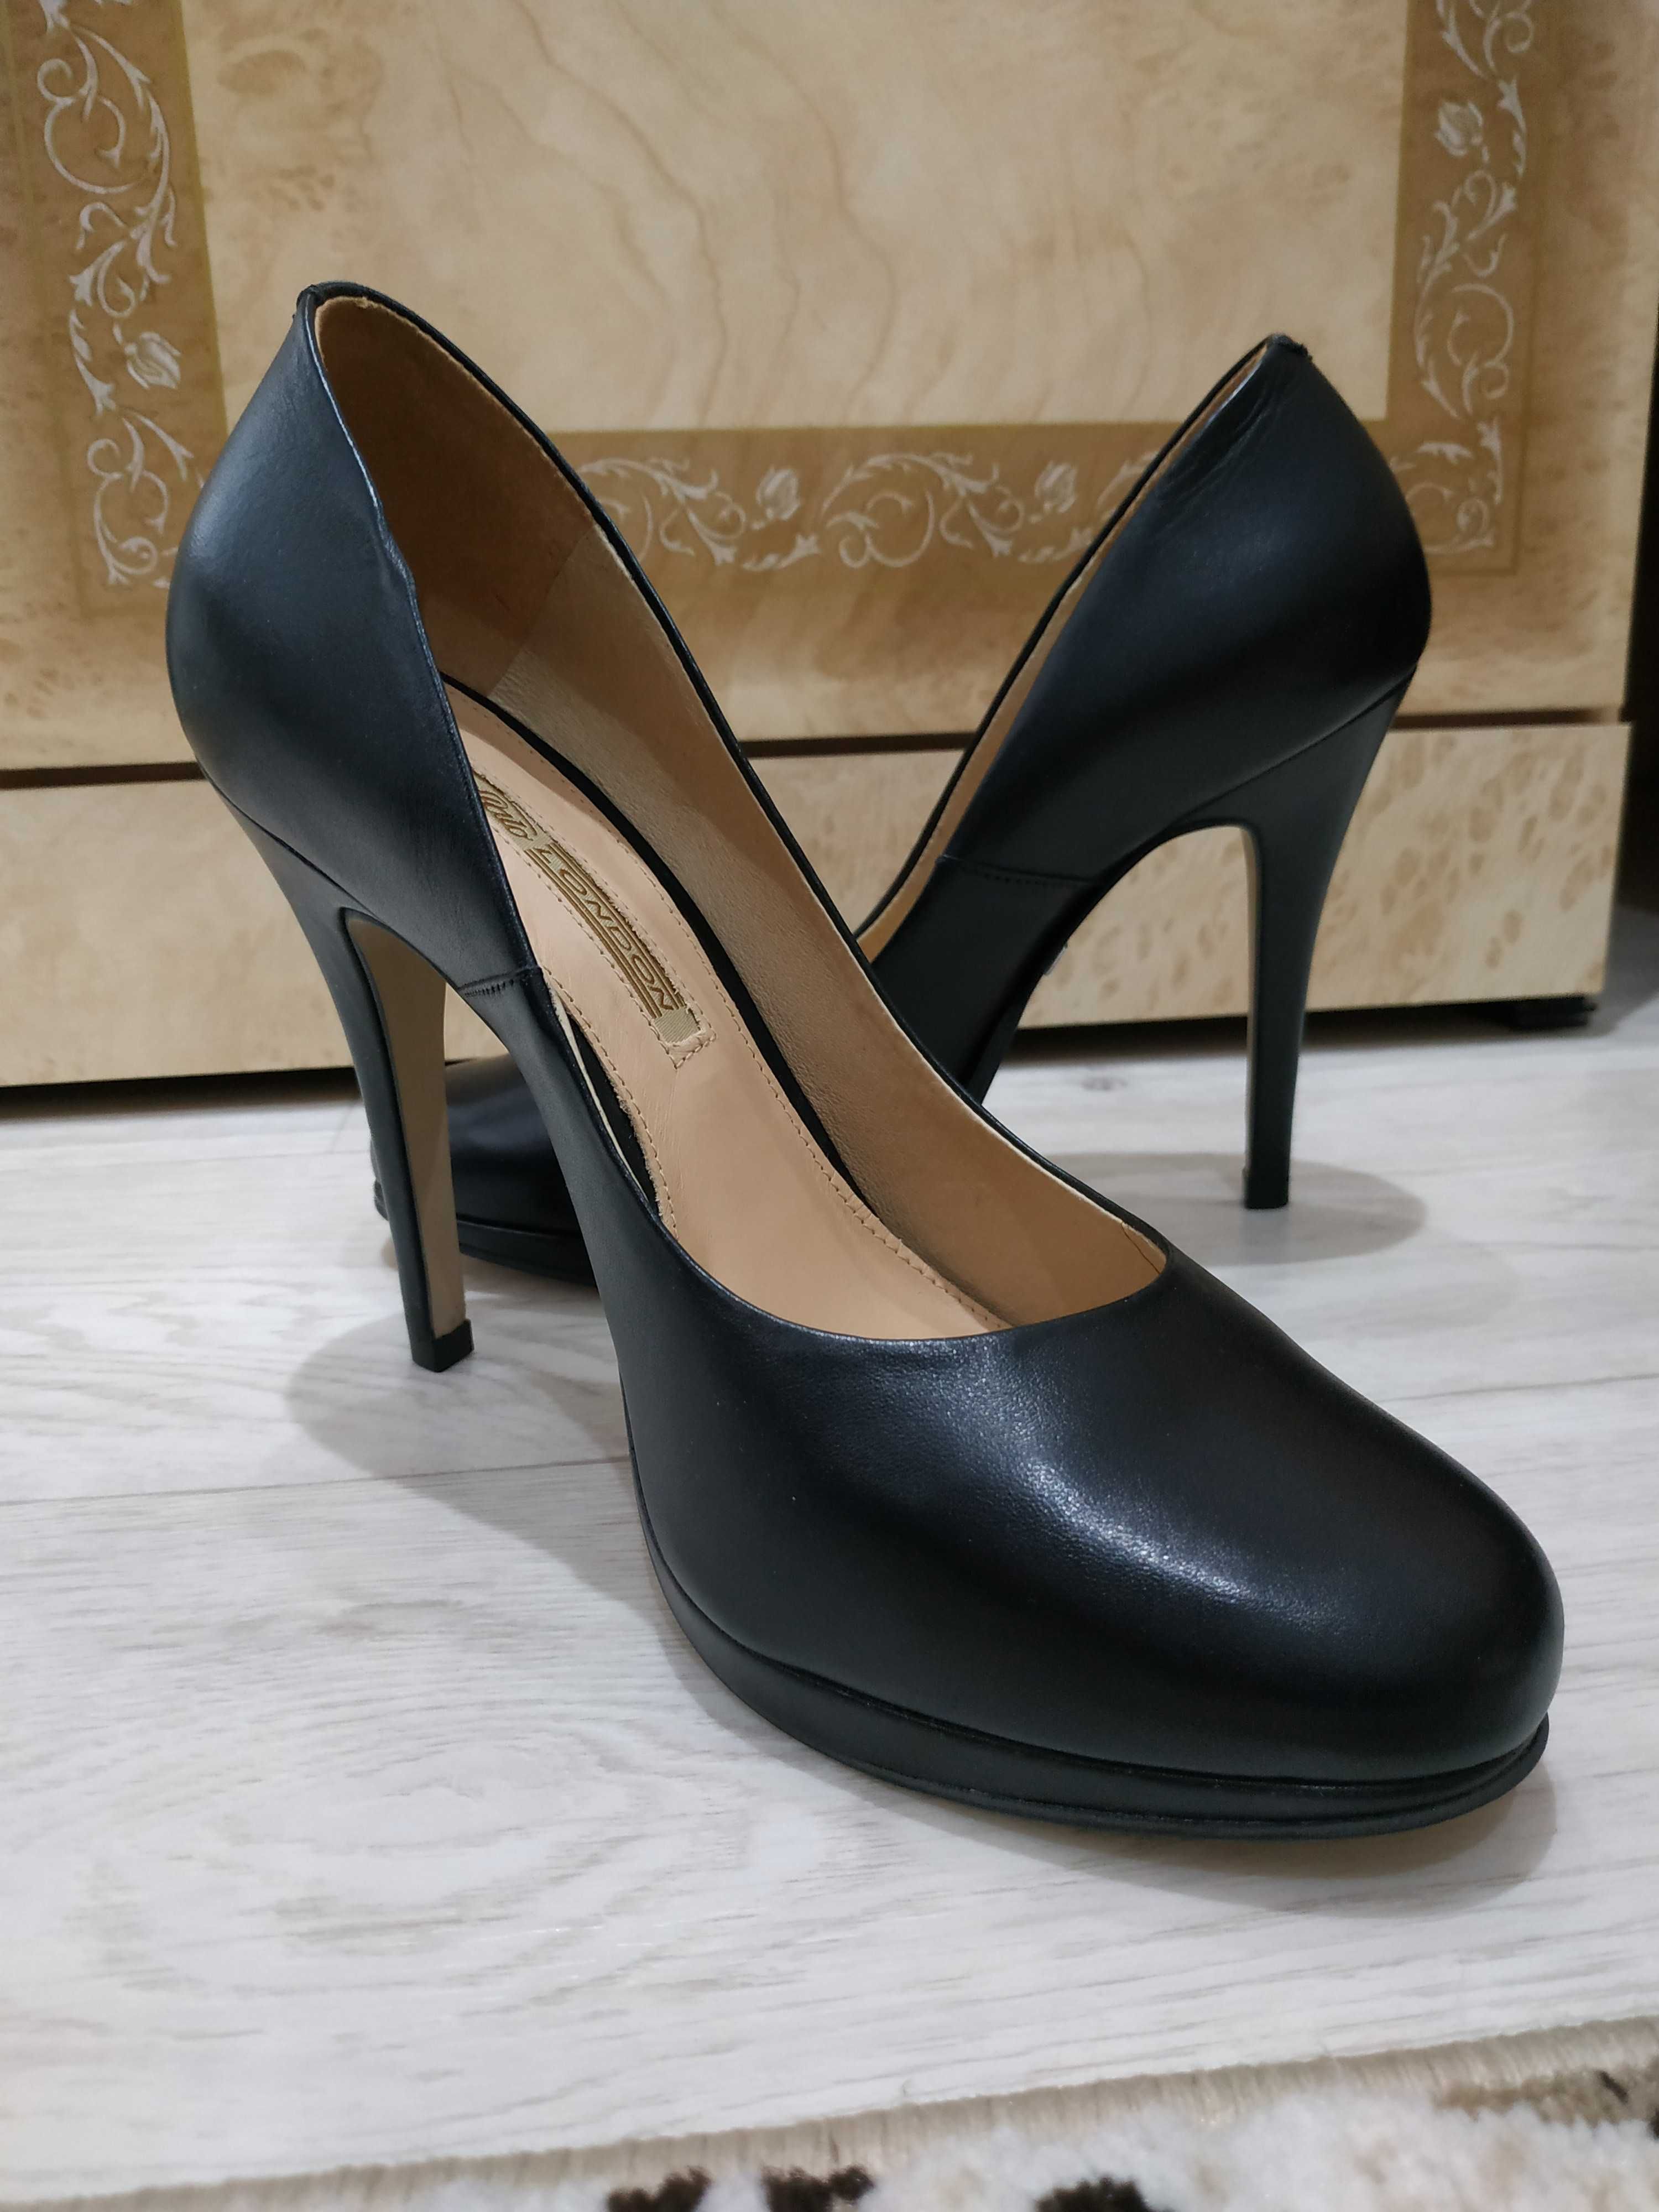 Продам женскую обувь европейских брендов 38 и 39 размеров